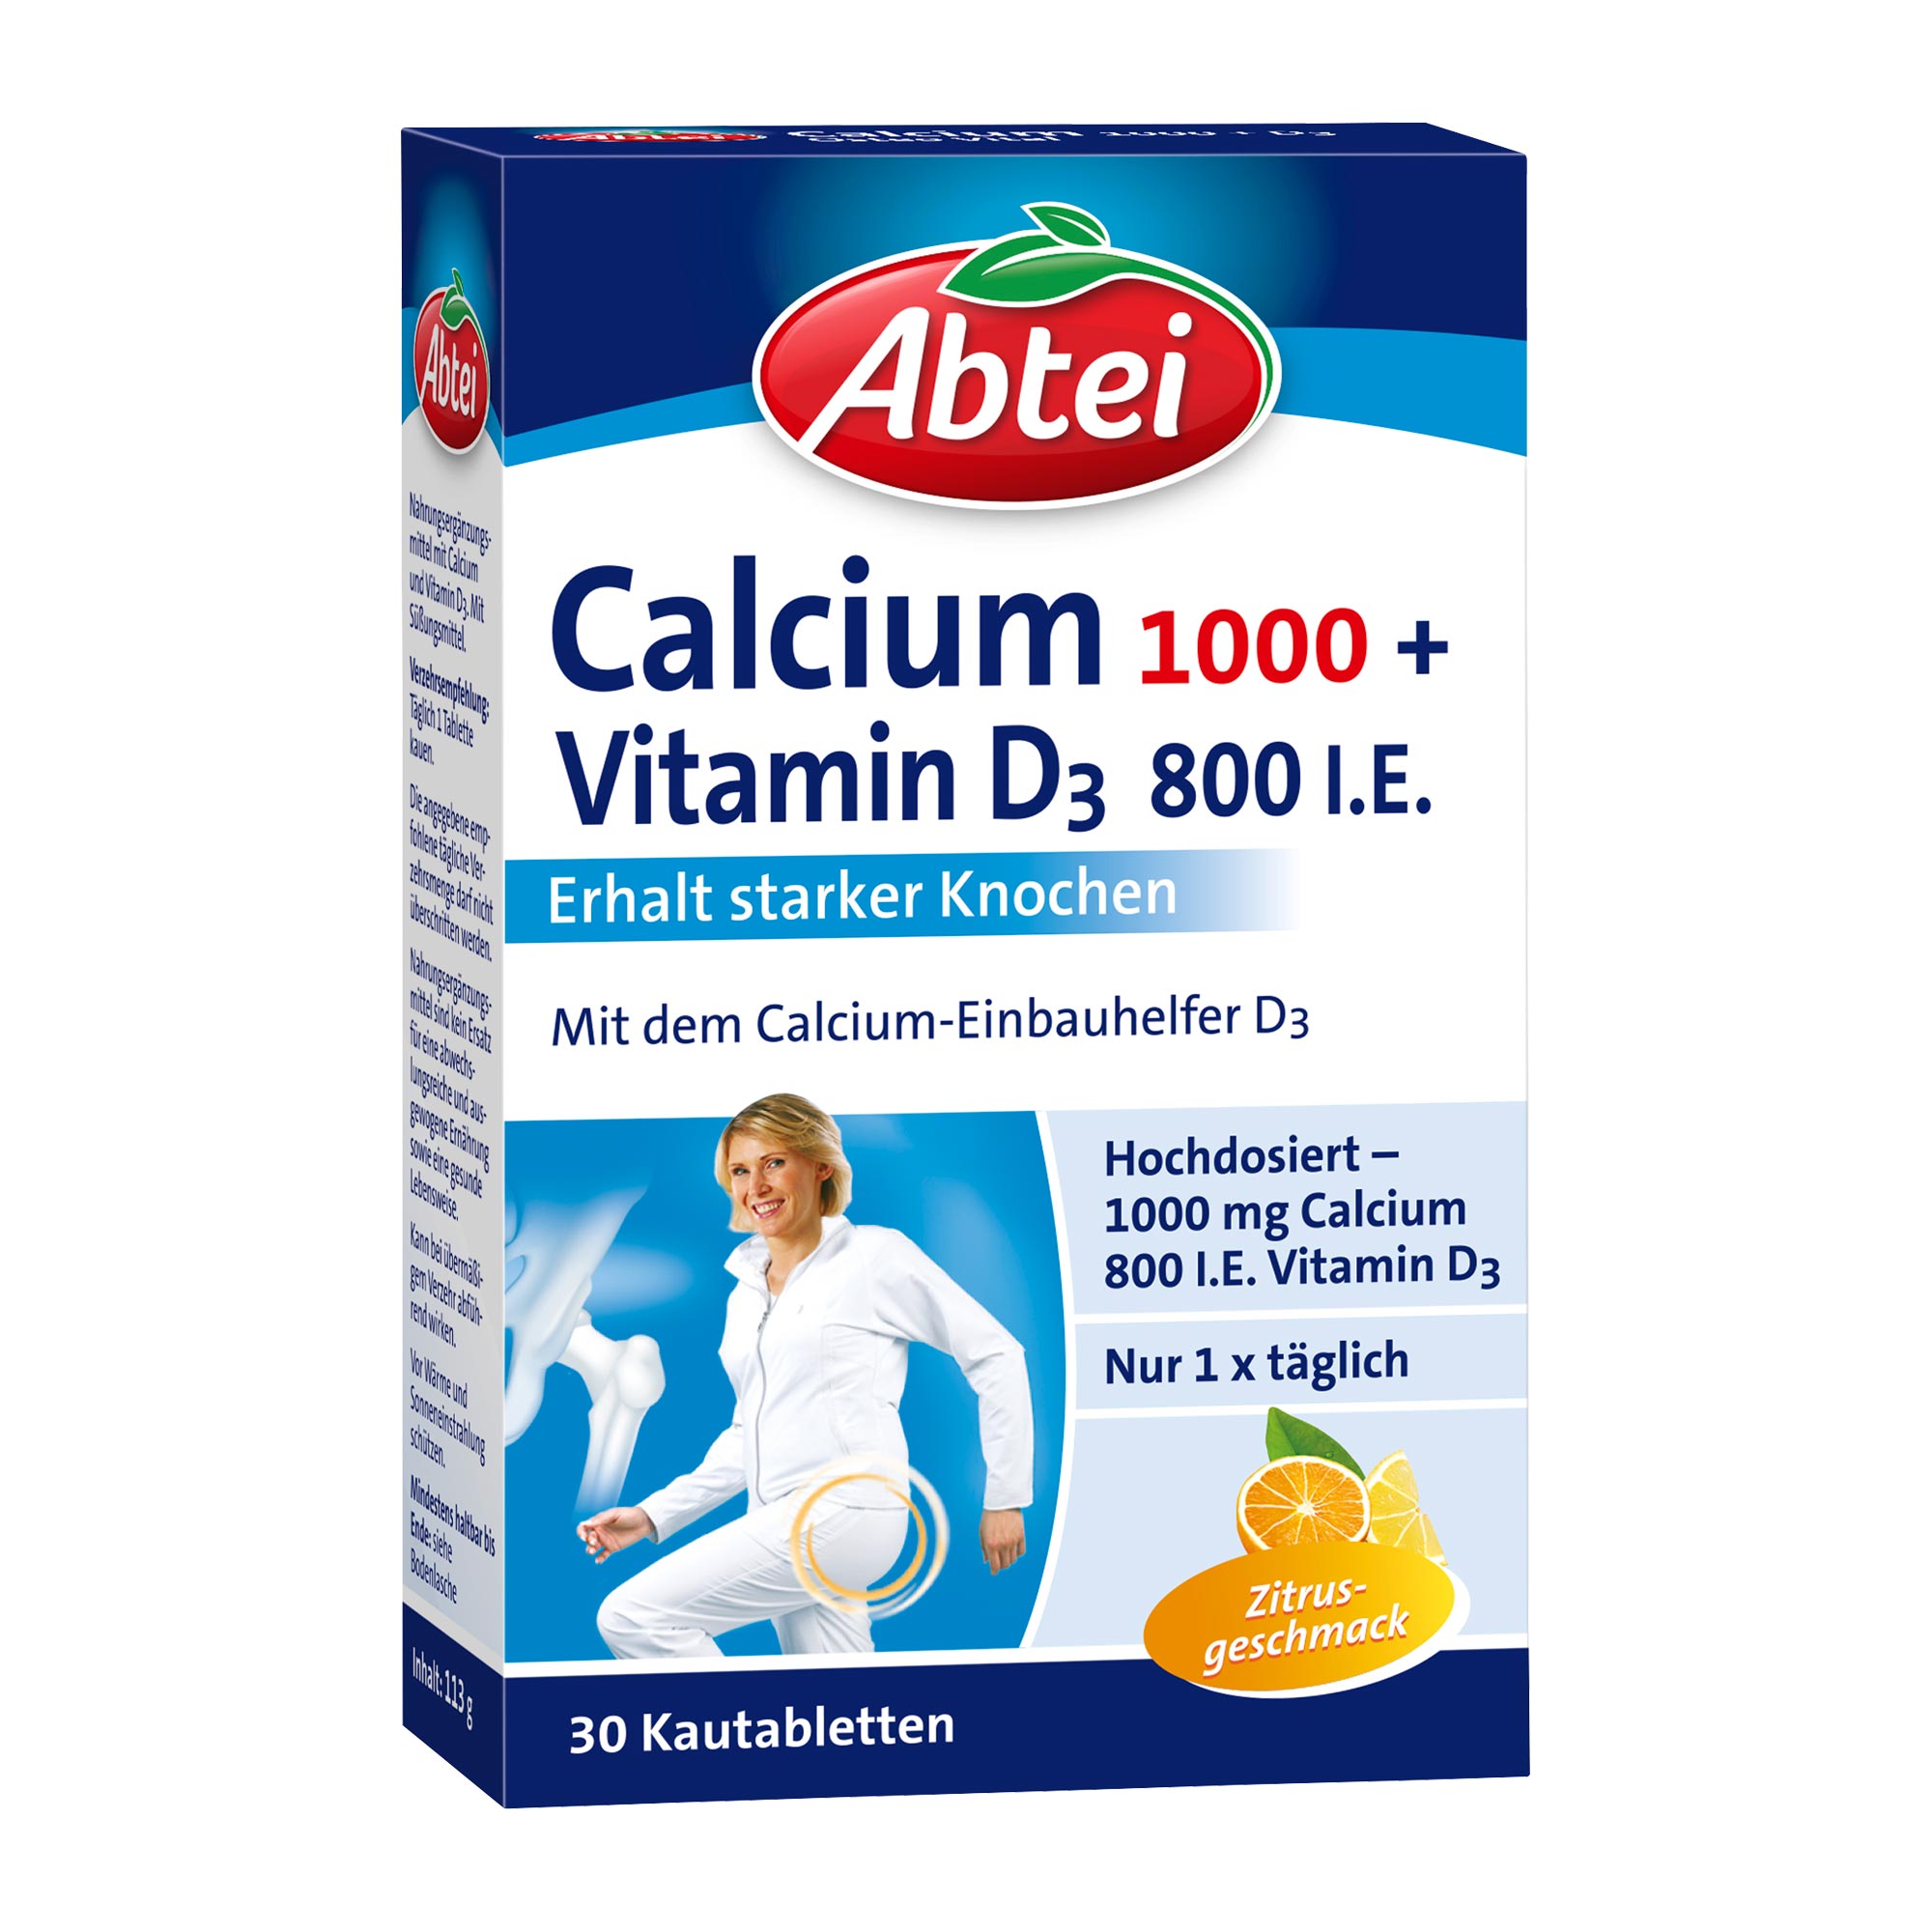 Nahrungsergänzungsmittel mit Calcium und Vitamin D3.